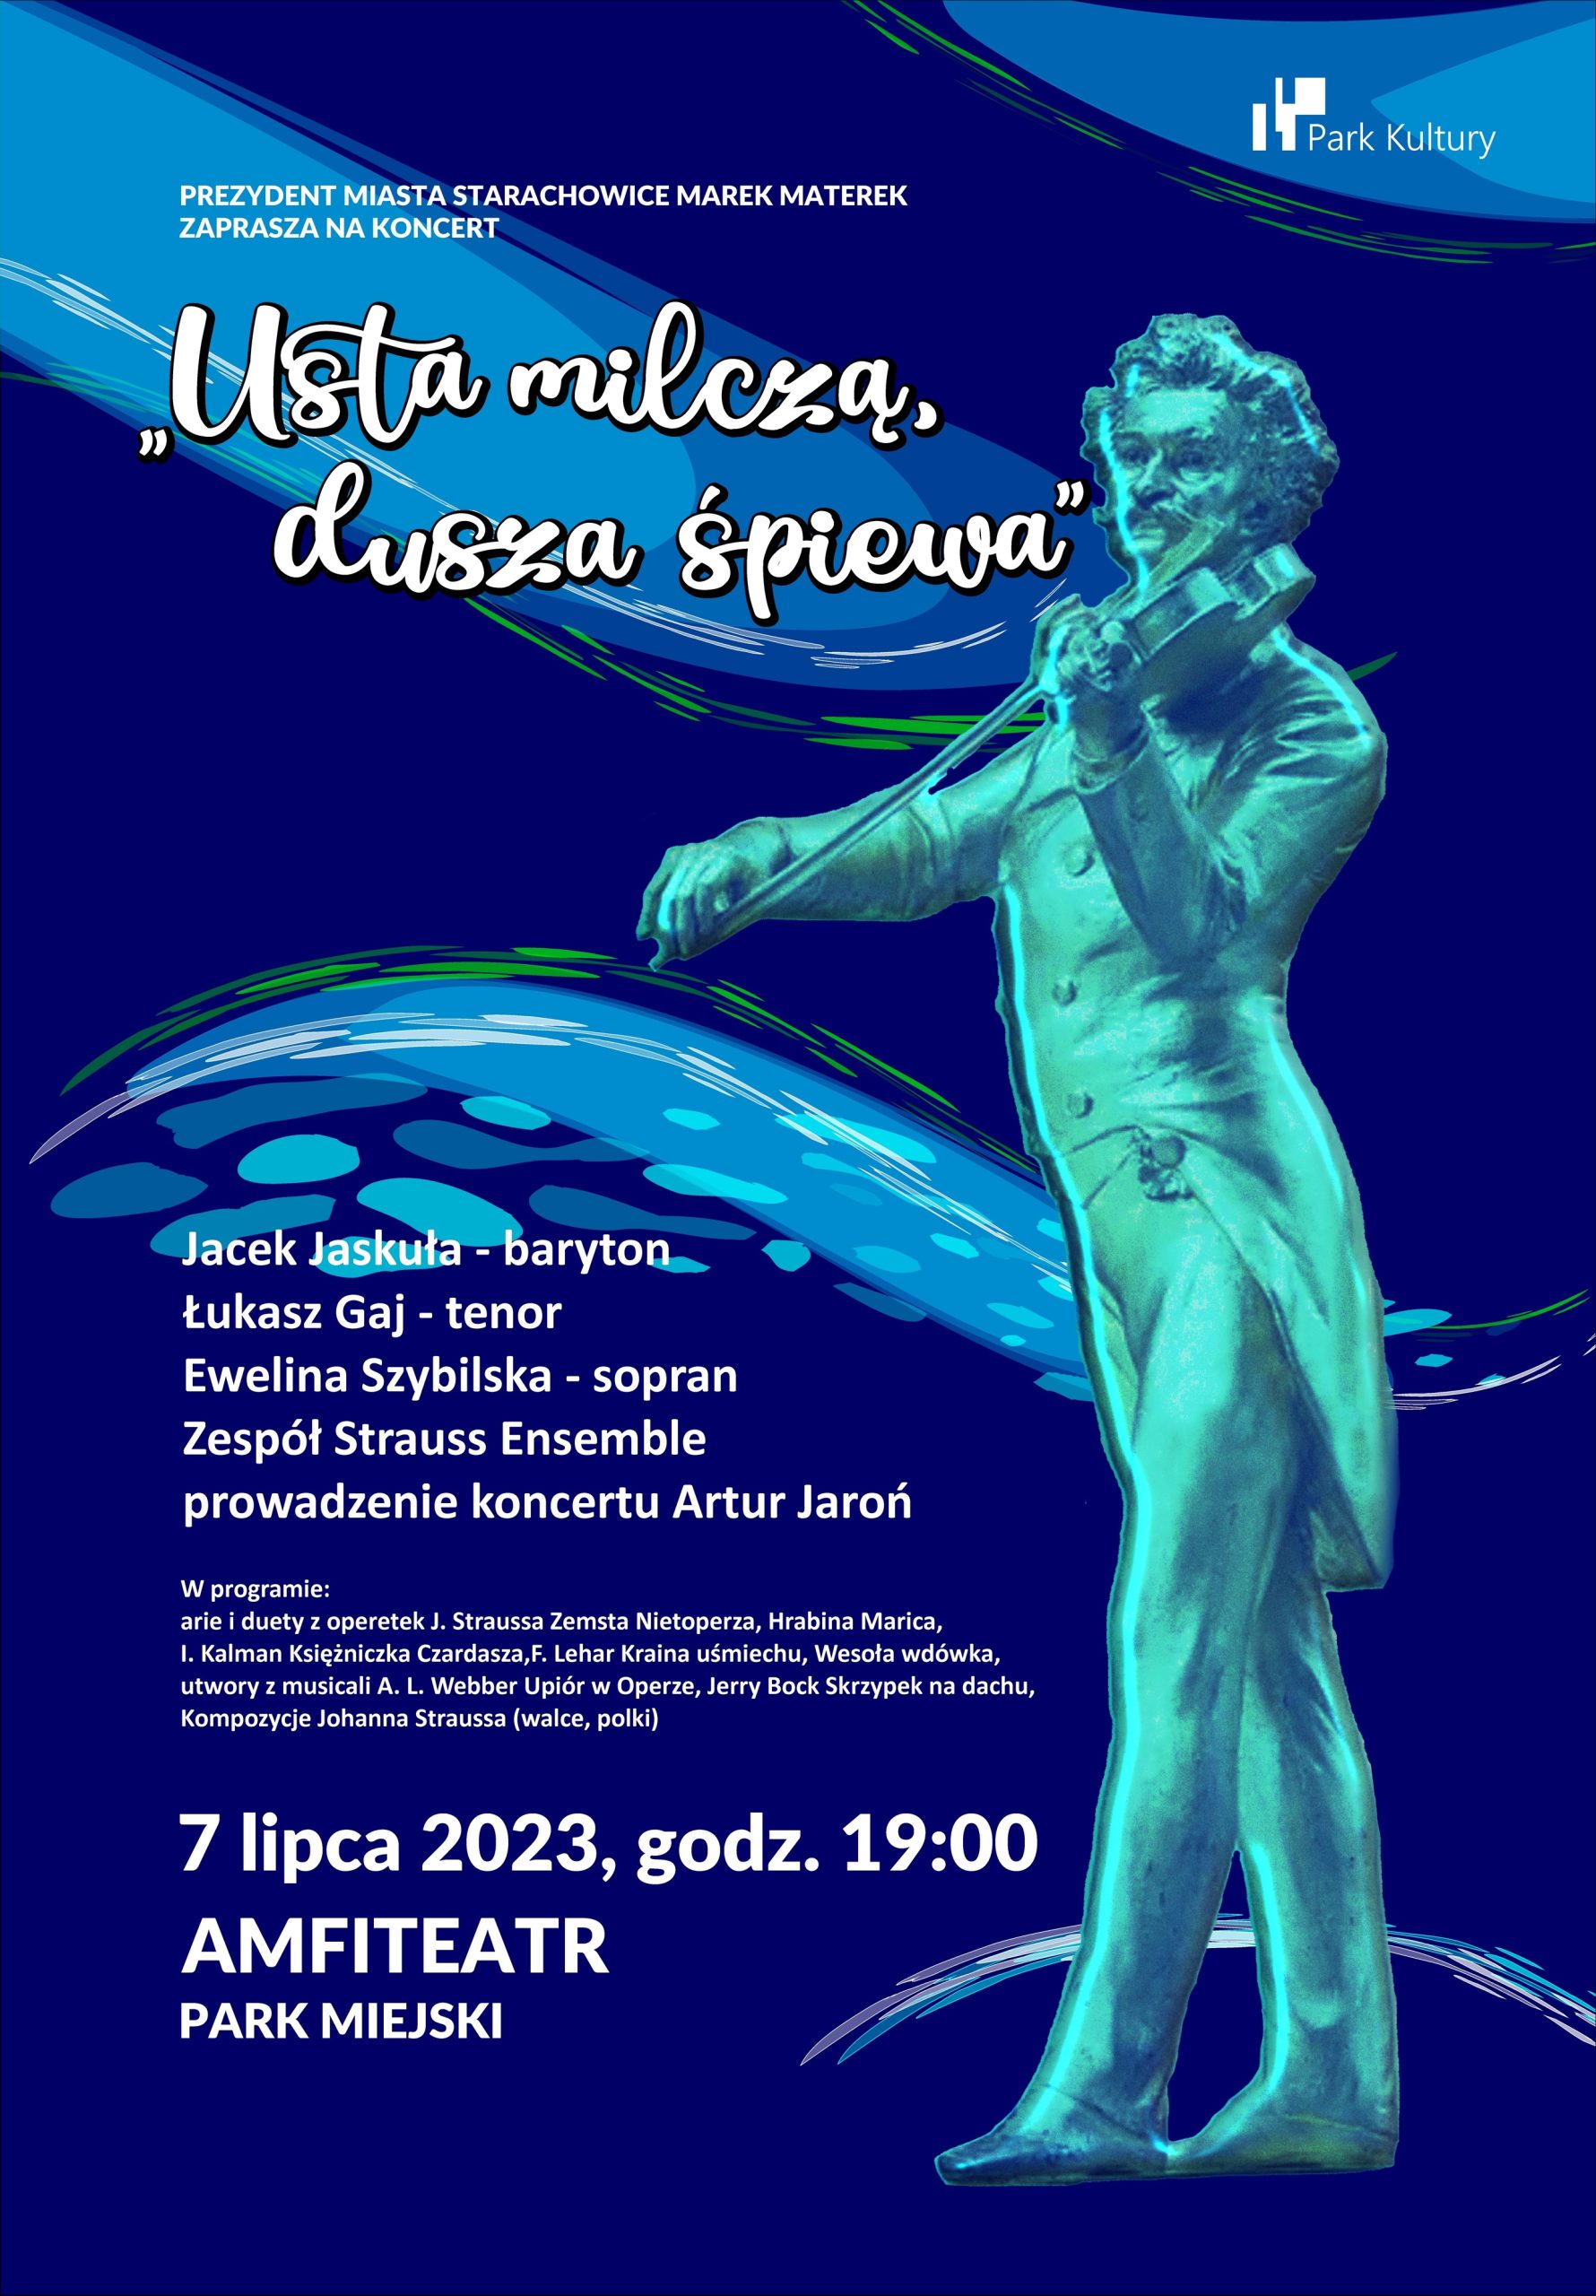 ,,Usta milczą, dusza śpiewa” – koncert operetkowy i musicalowy w Starachowicach.